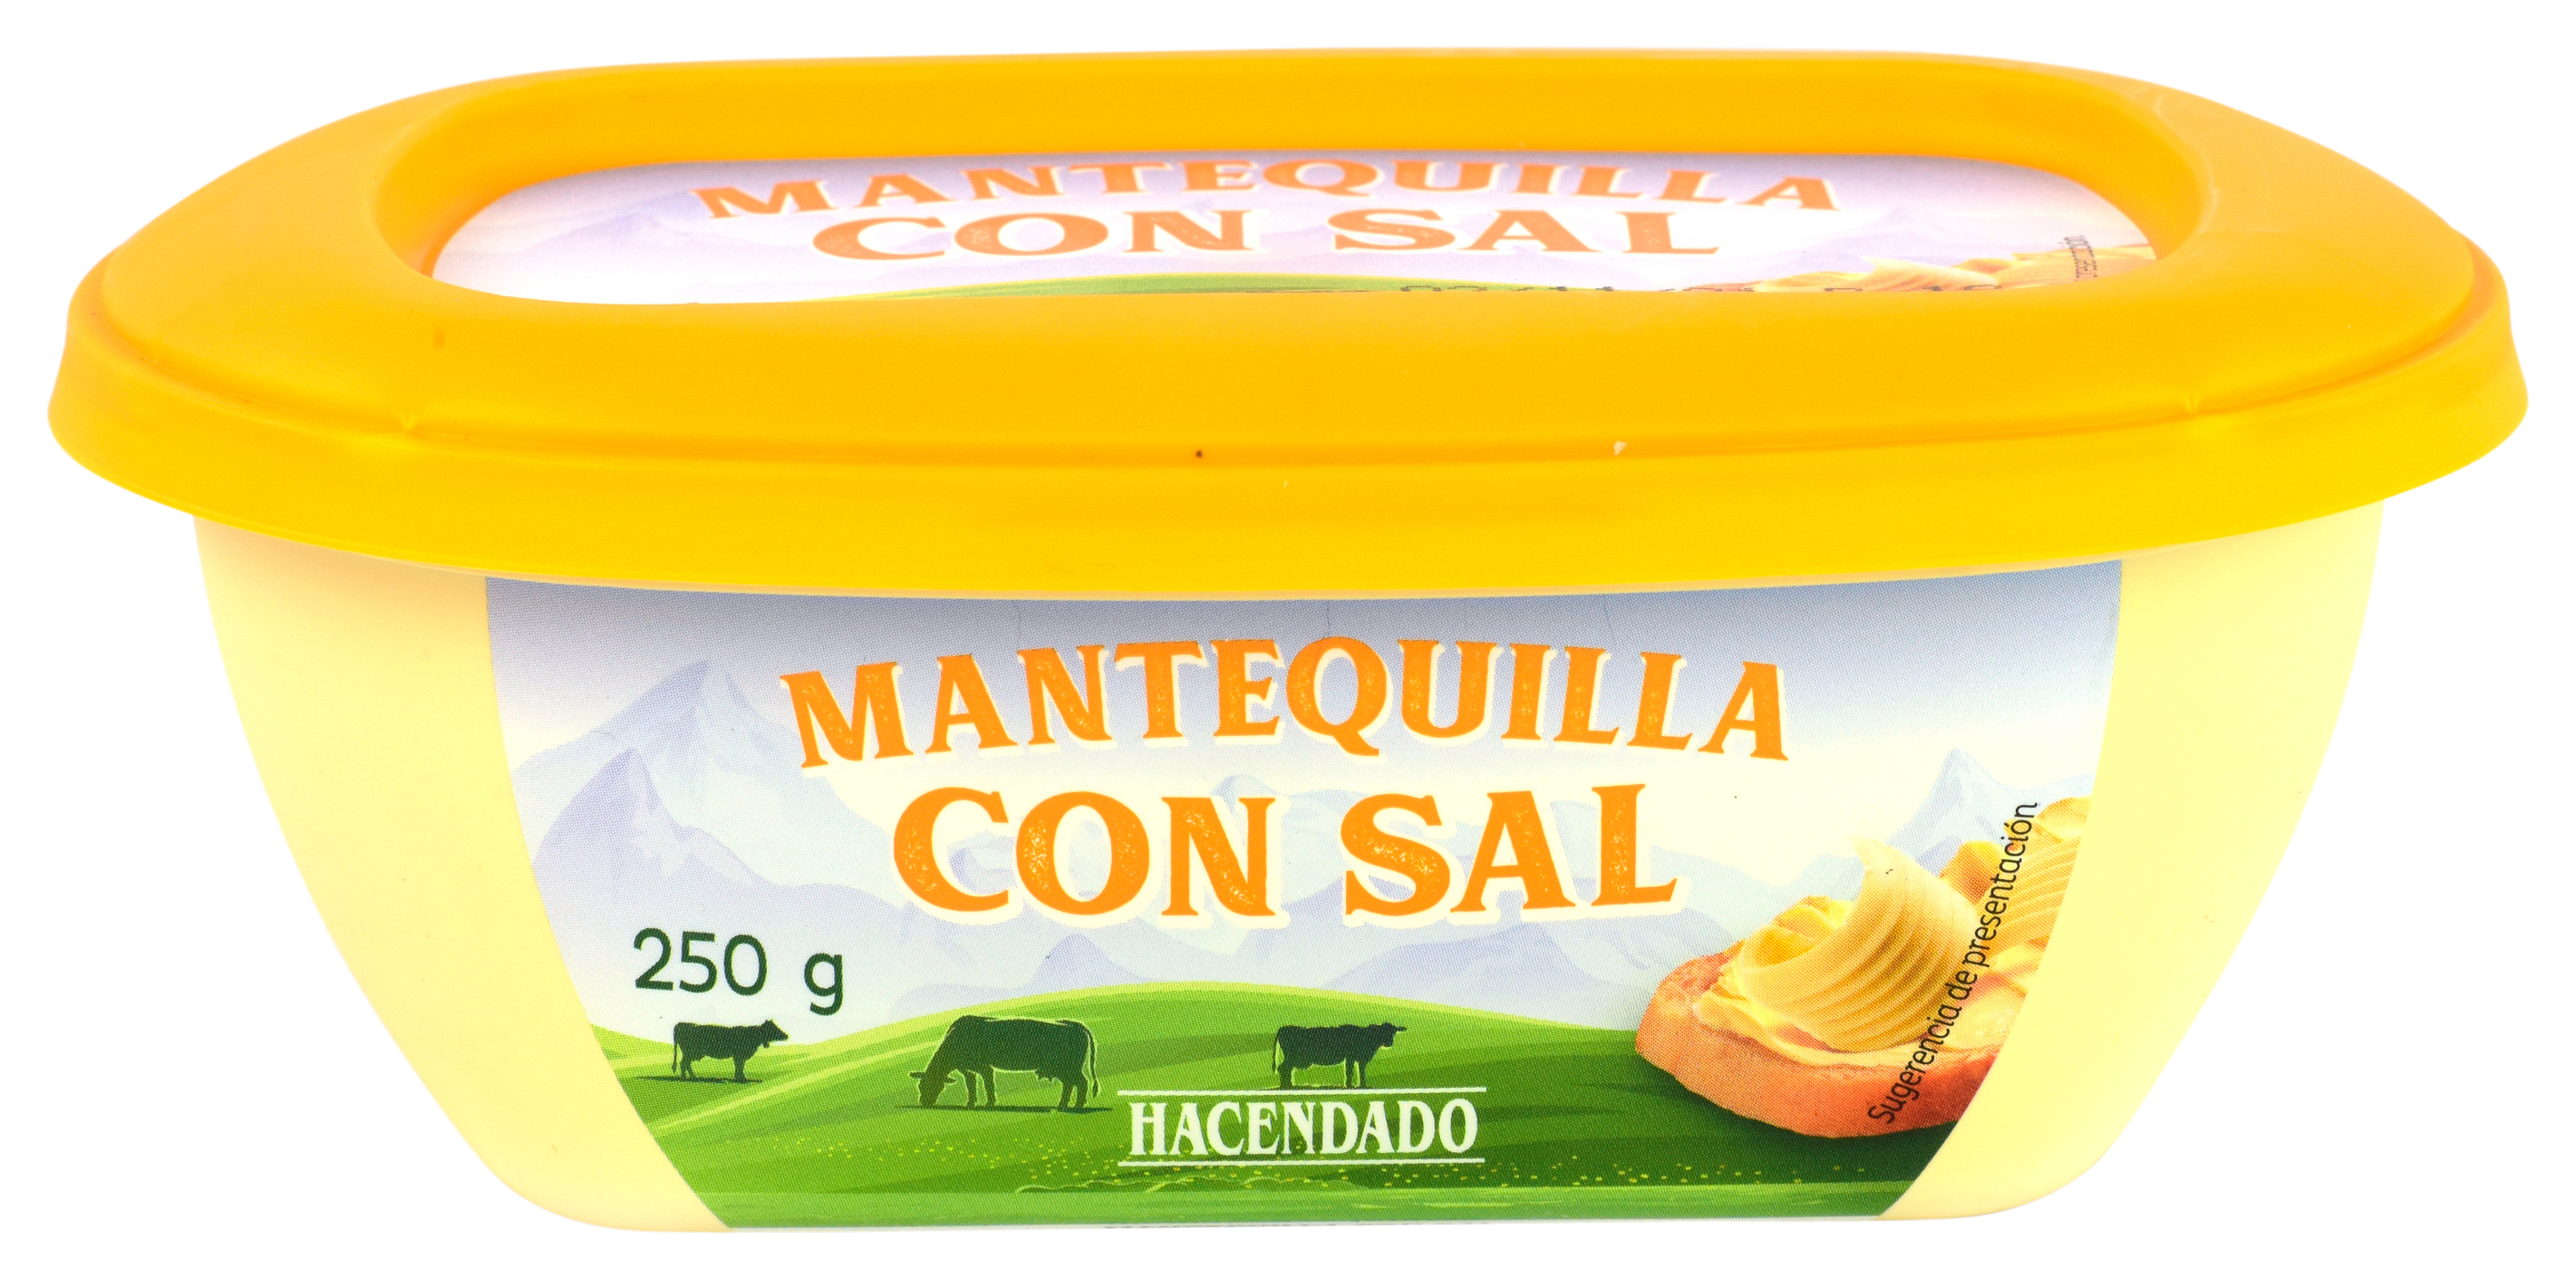 MANTERQUILLA CON SAL